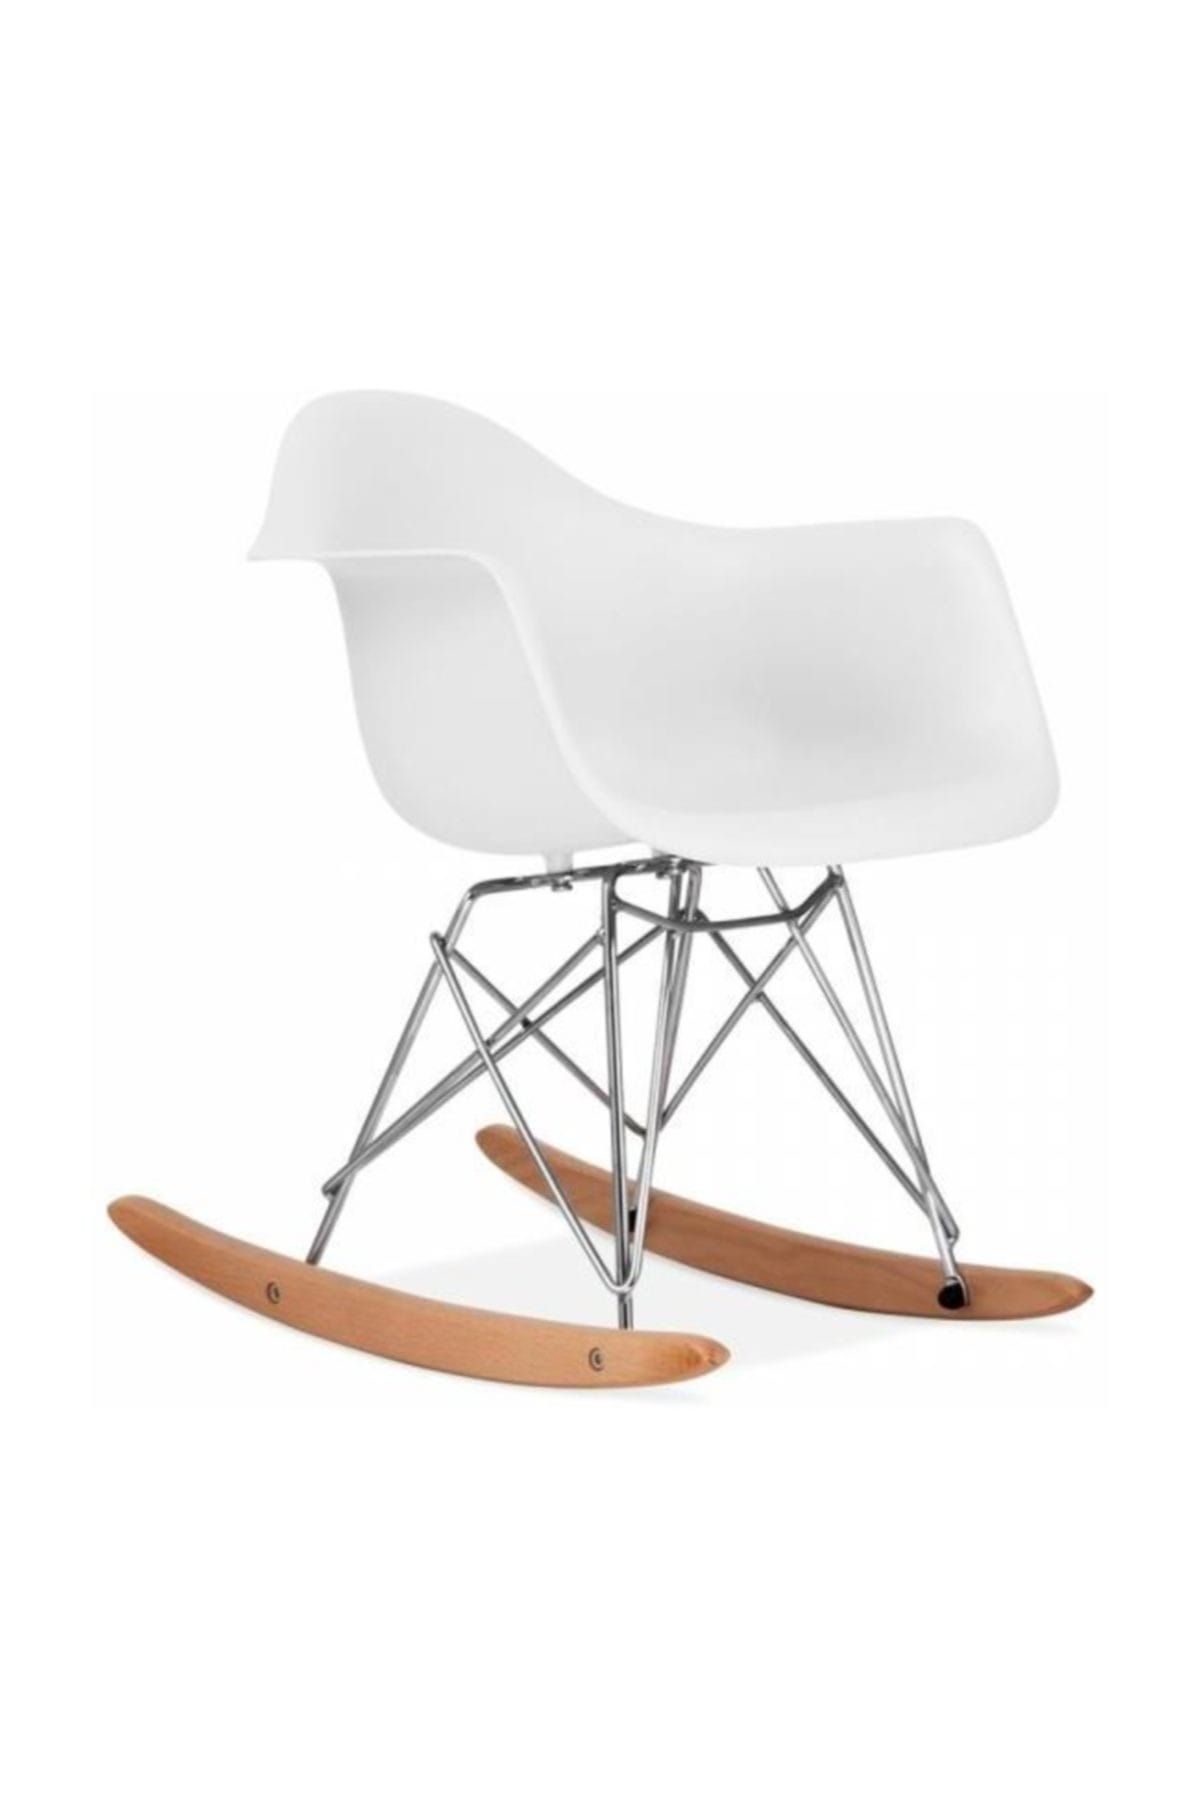 Vitale Aqua Beyaz Eames Sallanır Sandalye